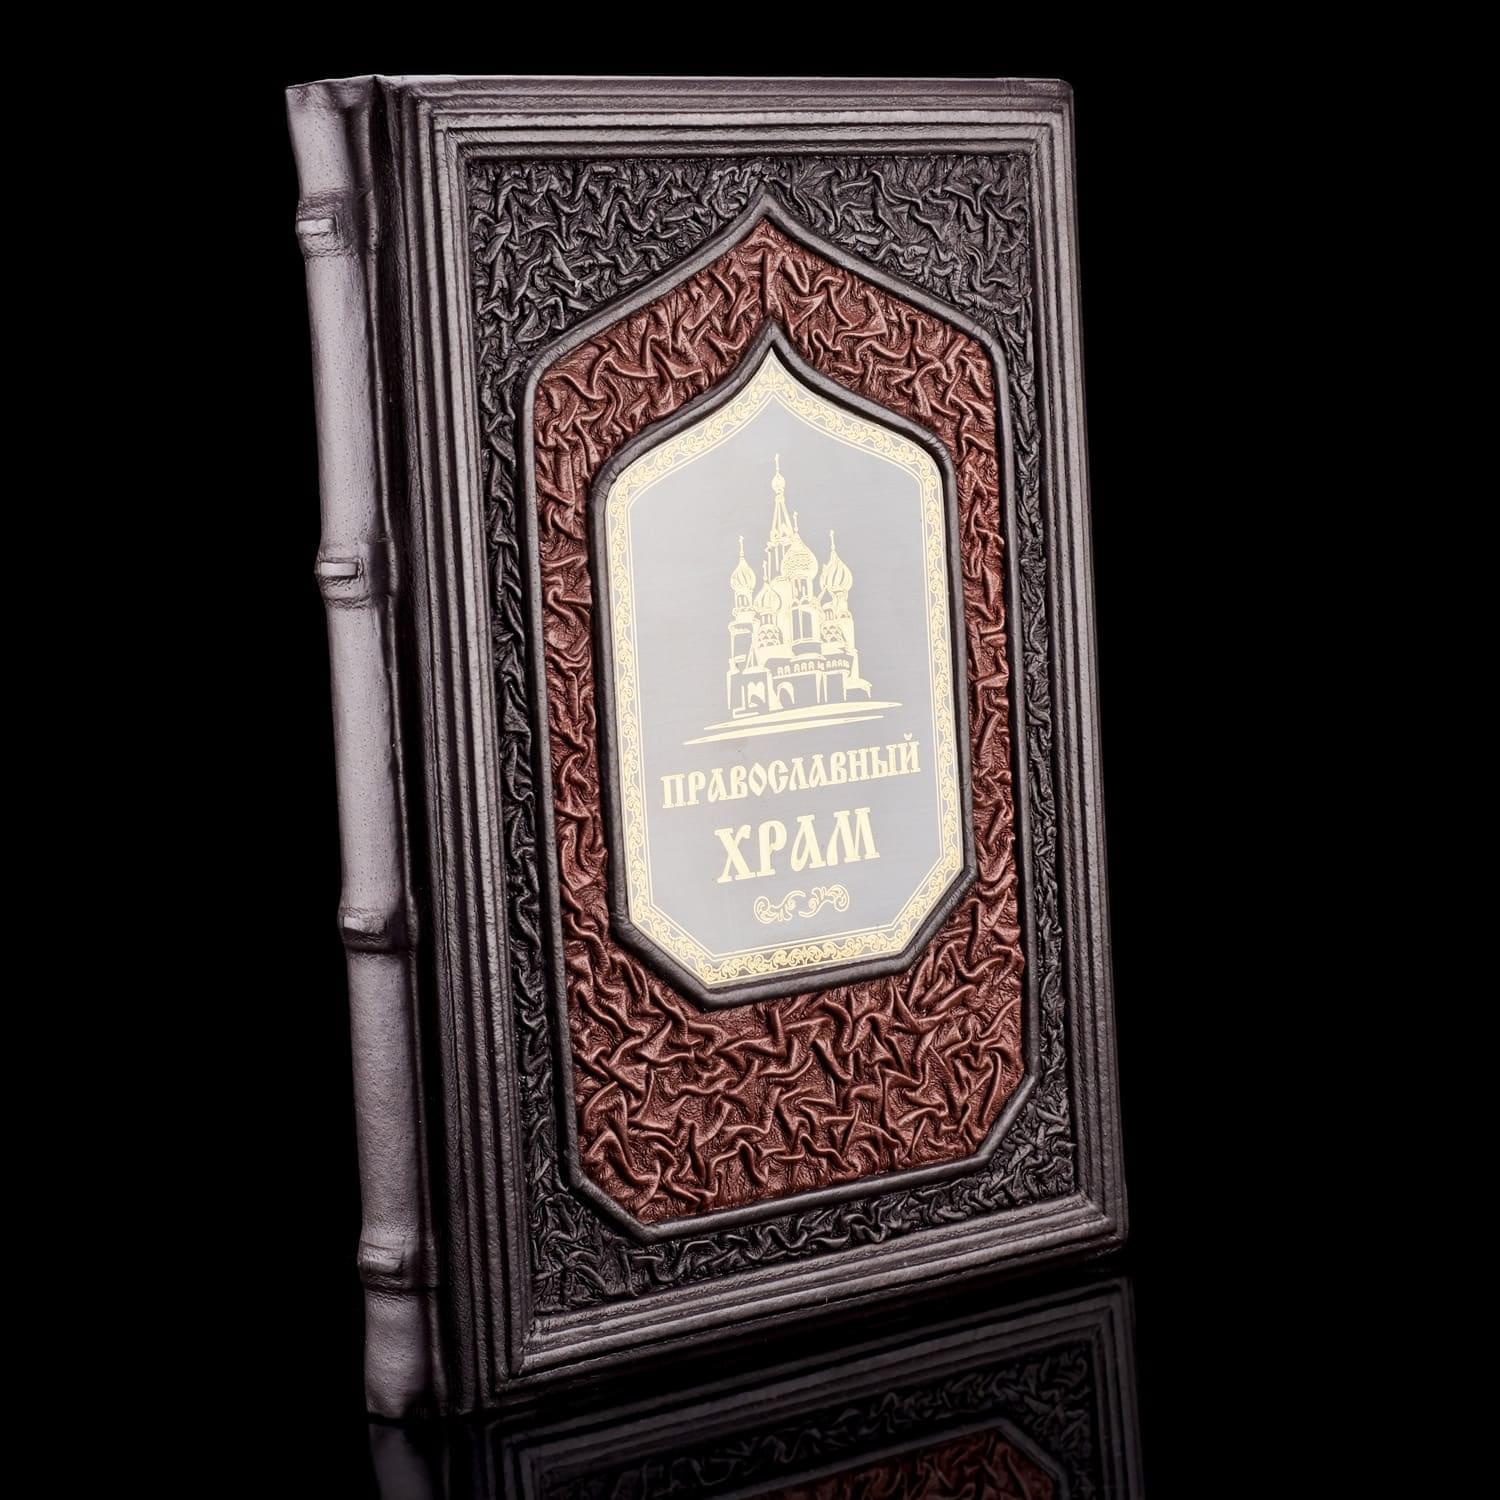 

Книга "Православный храм". Кожаный переплёт